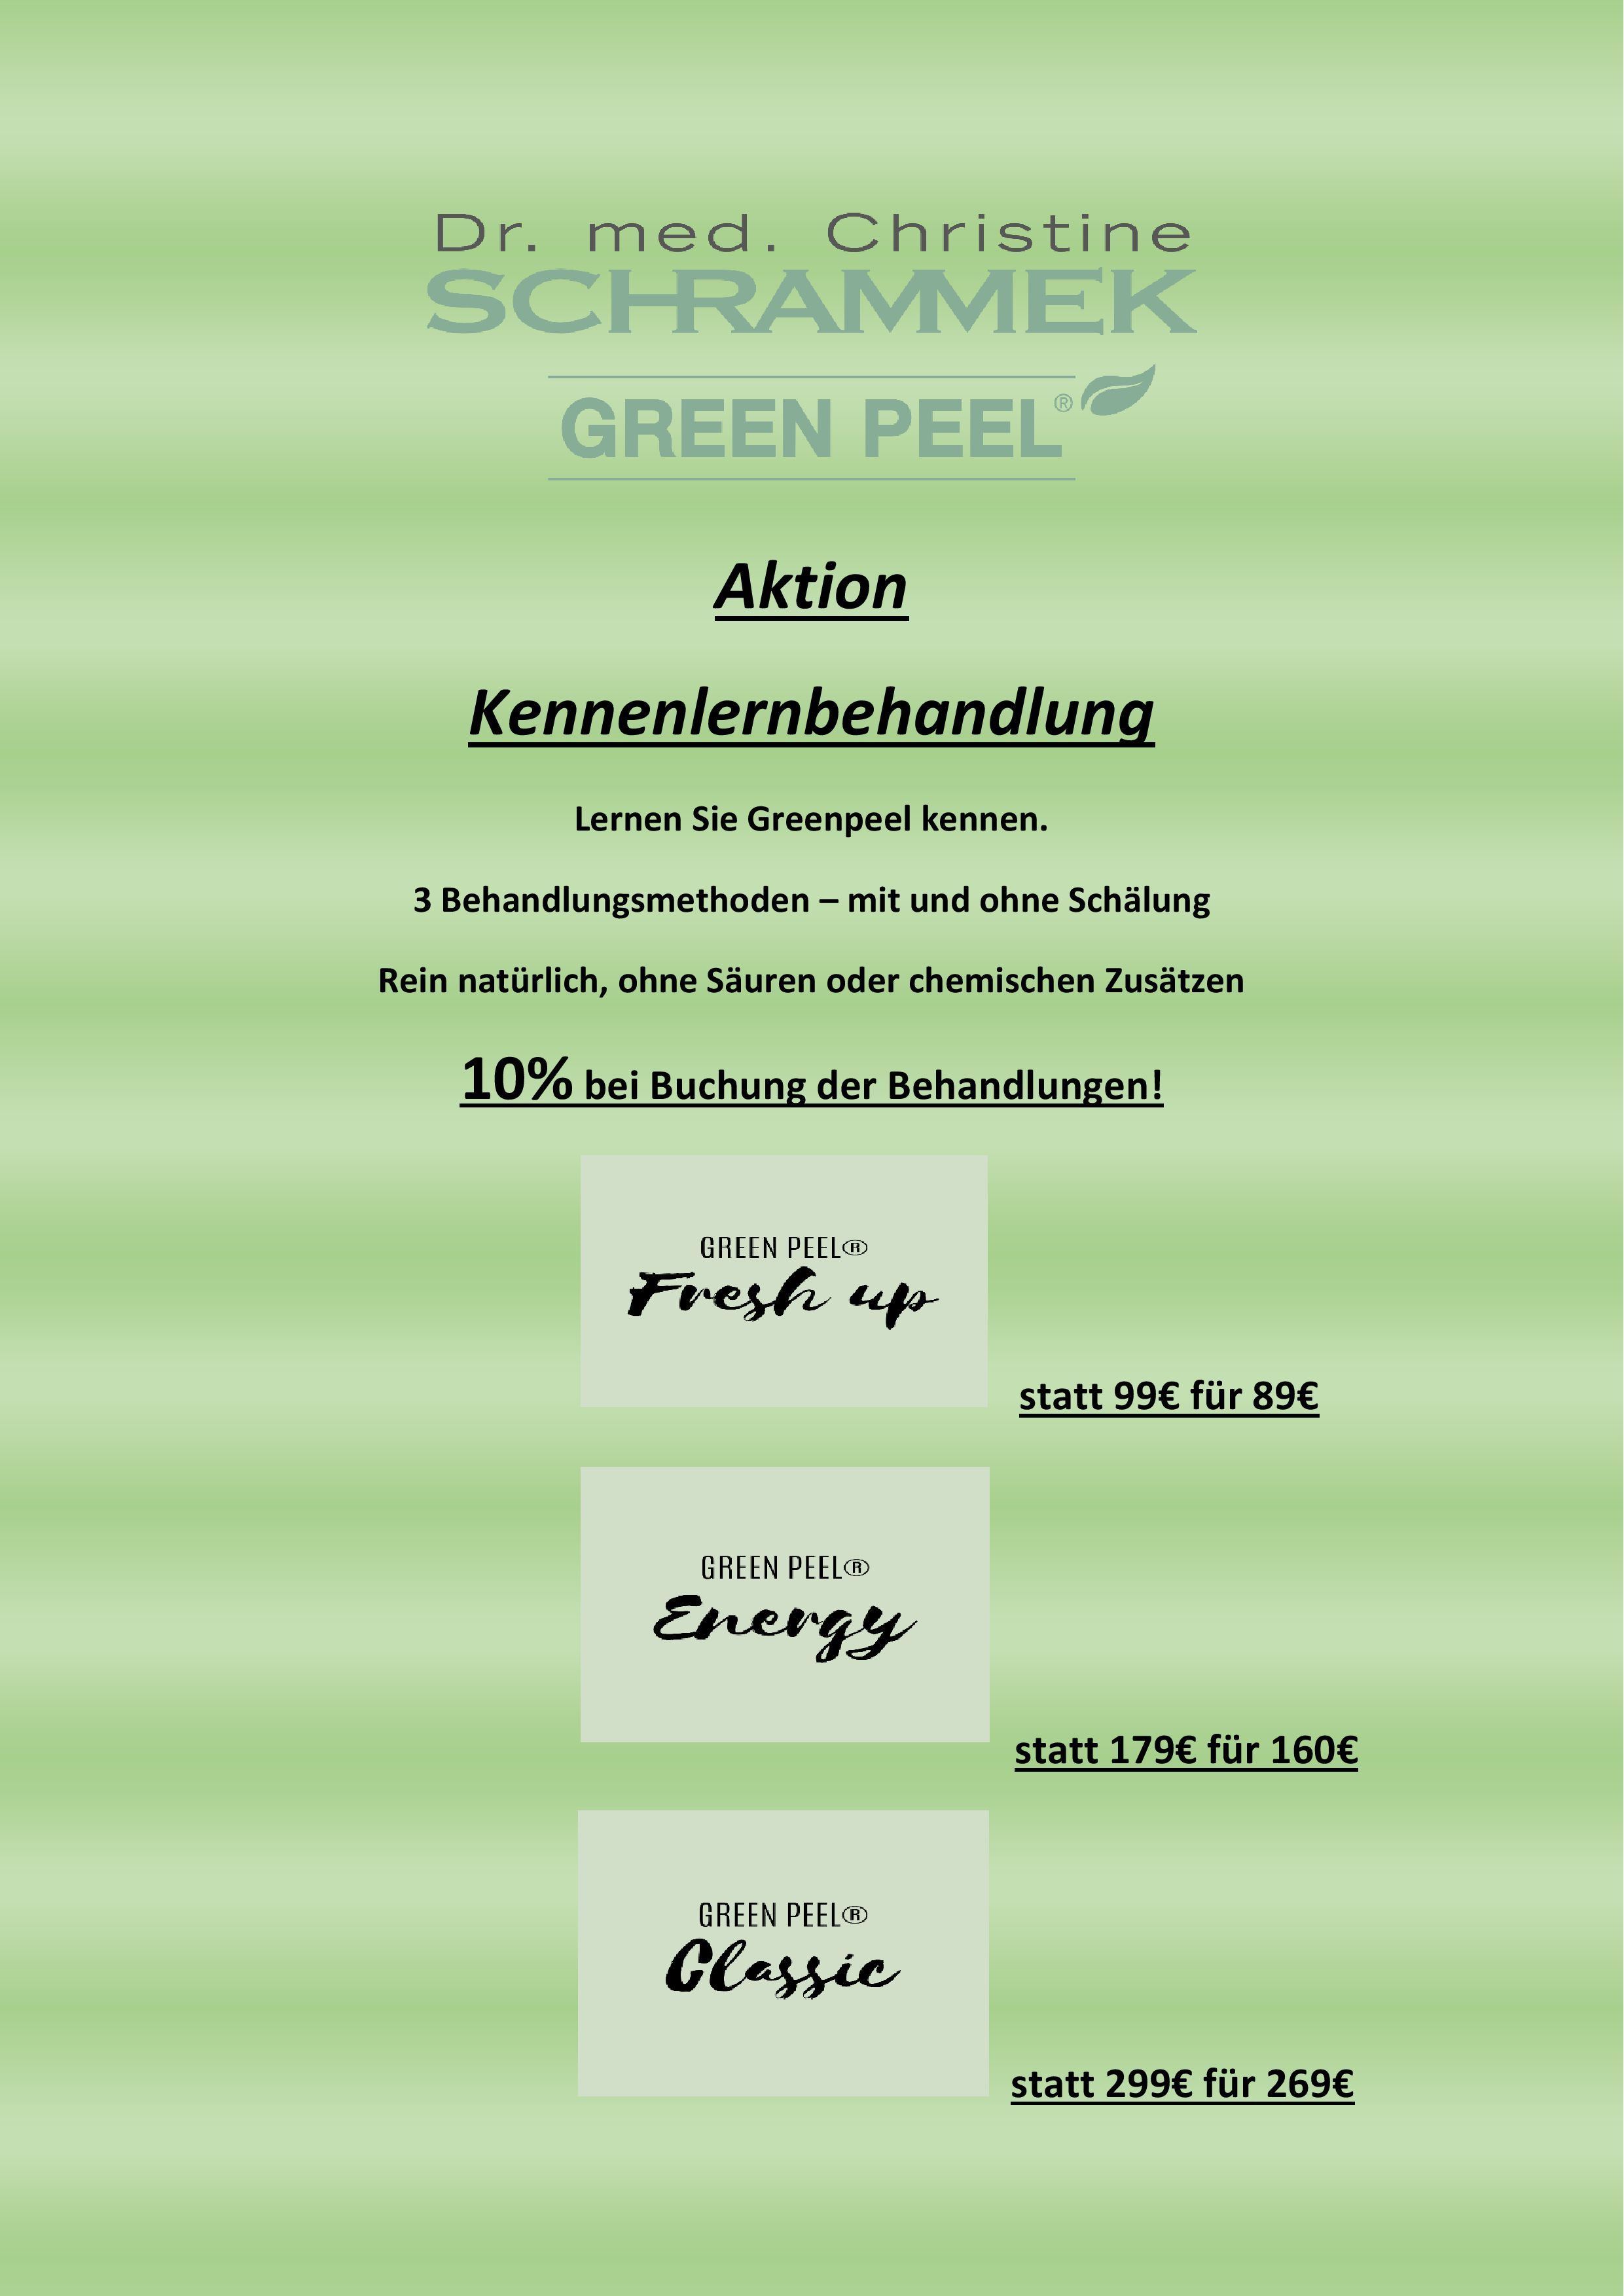 Green Peel